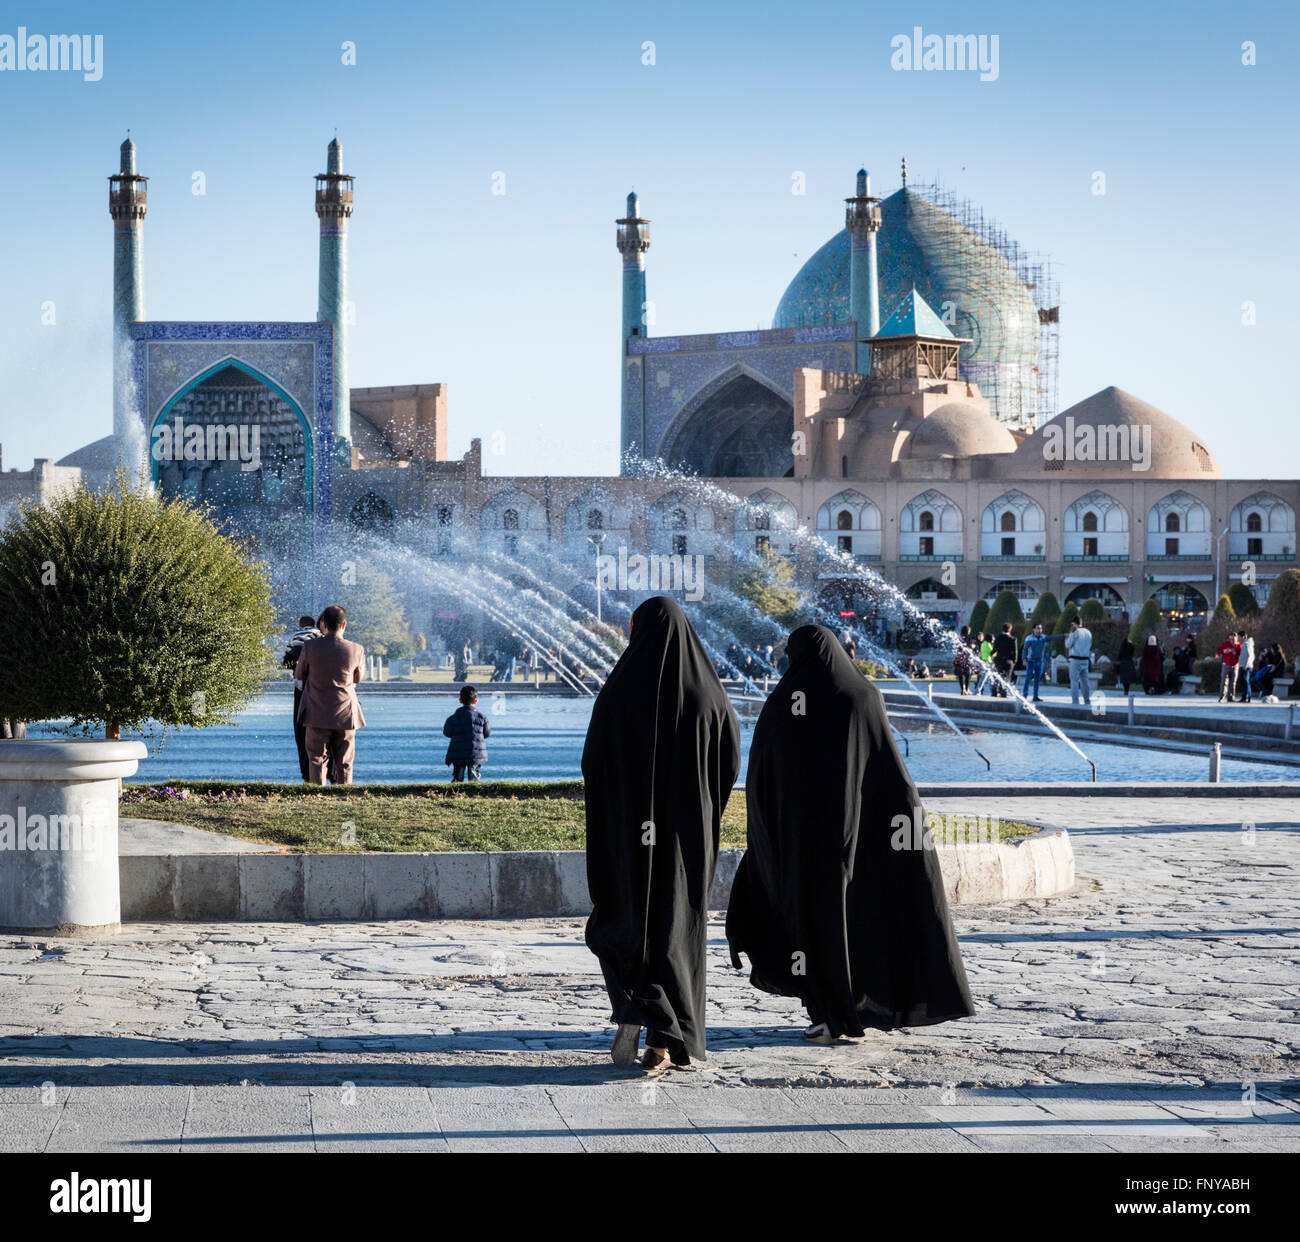 Tchador femmes à Place Imam avec fontaines et le dôme et les minarets de la mosquée d'Imam en arrière-plan. Isfahan, Iran Banque D'Images